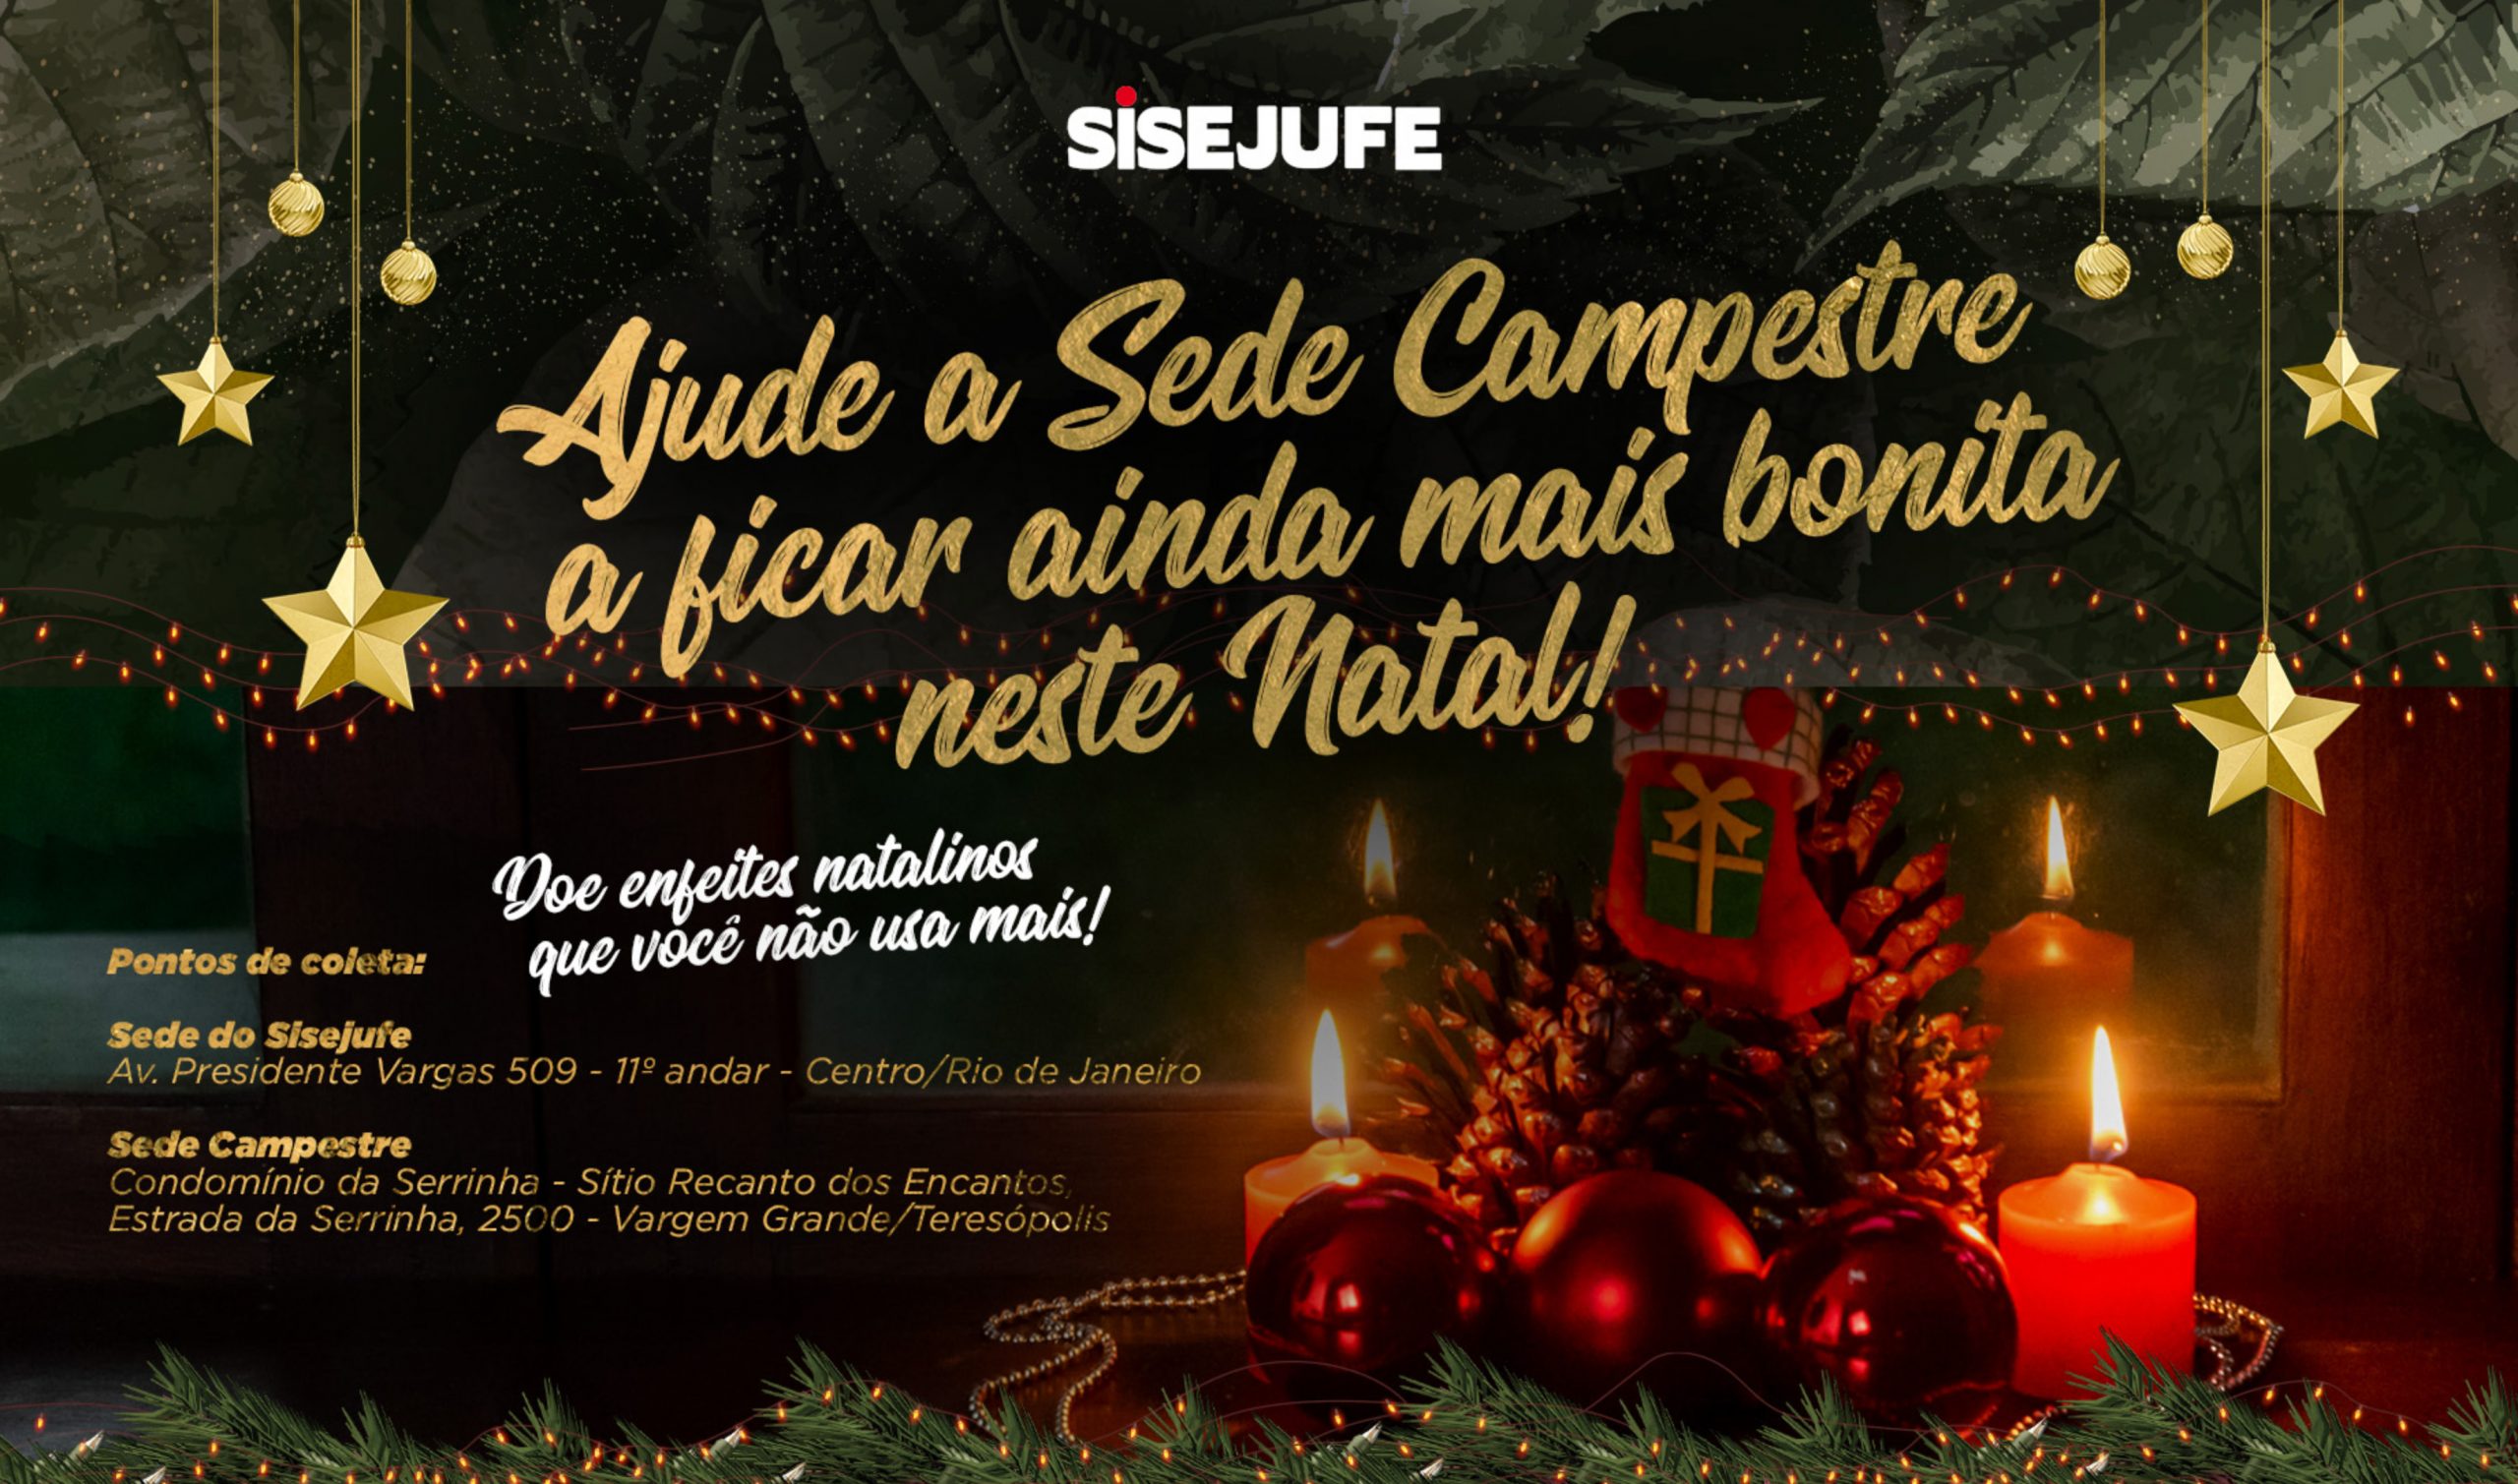 Sisejufe lança campanha de doação de enfeites de Natal para deixar a  decoração da Sede Campestre com o jeitinho da categoria - SISEJUFE